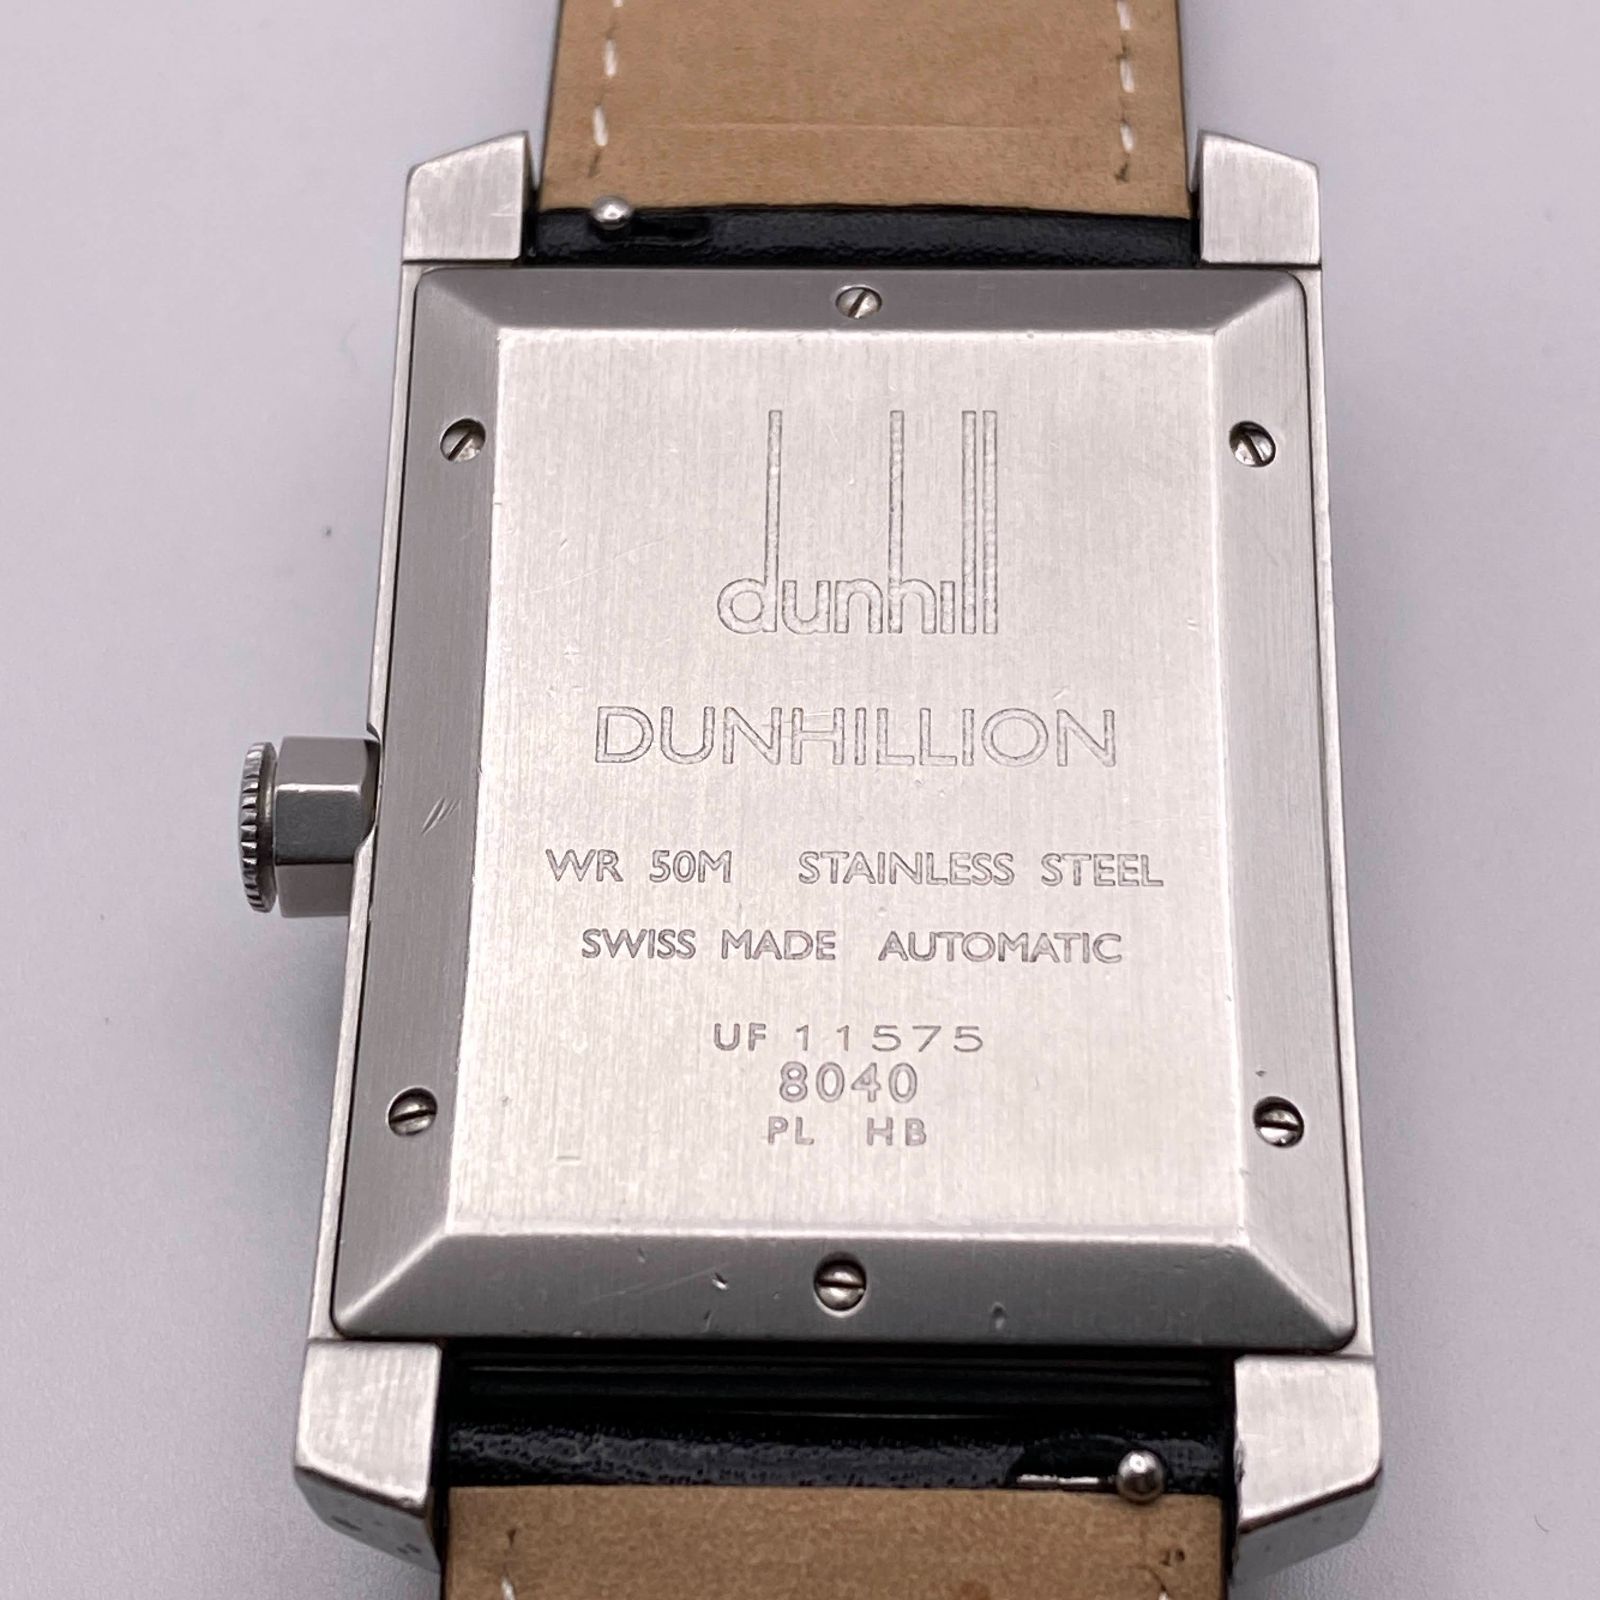 【美品・稼働品】ダンヒル dunhill ダンヒリオン オートマチック 8040Kのアイテム一覧